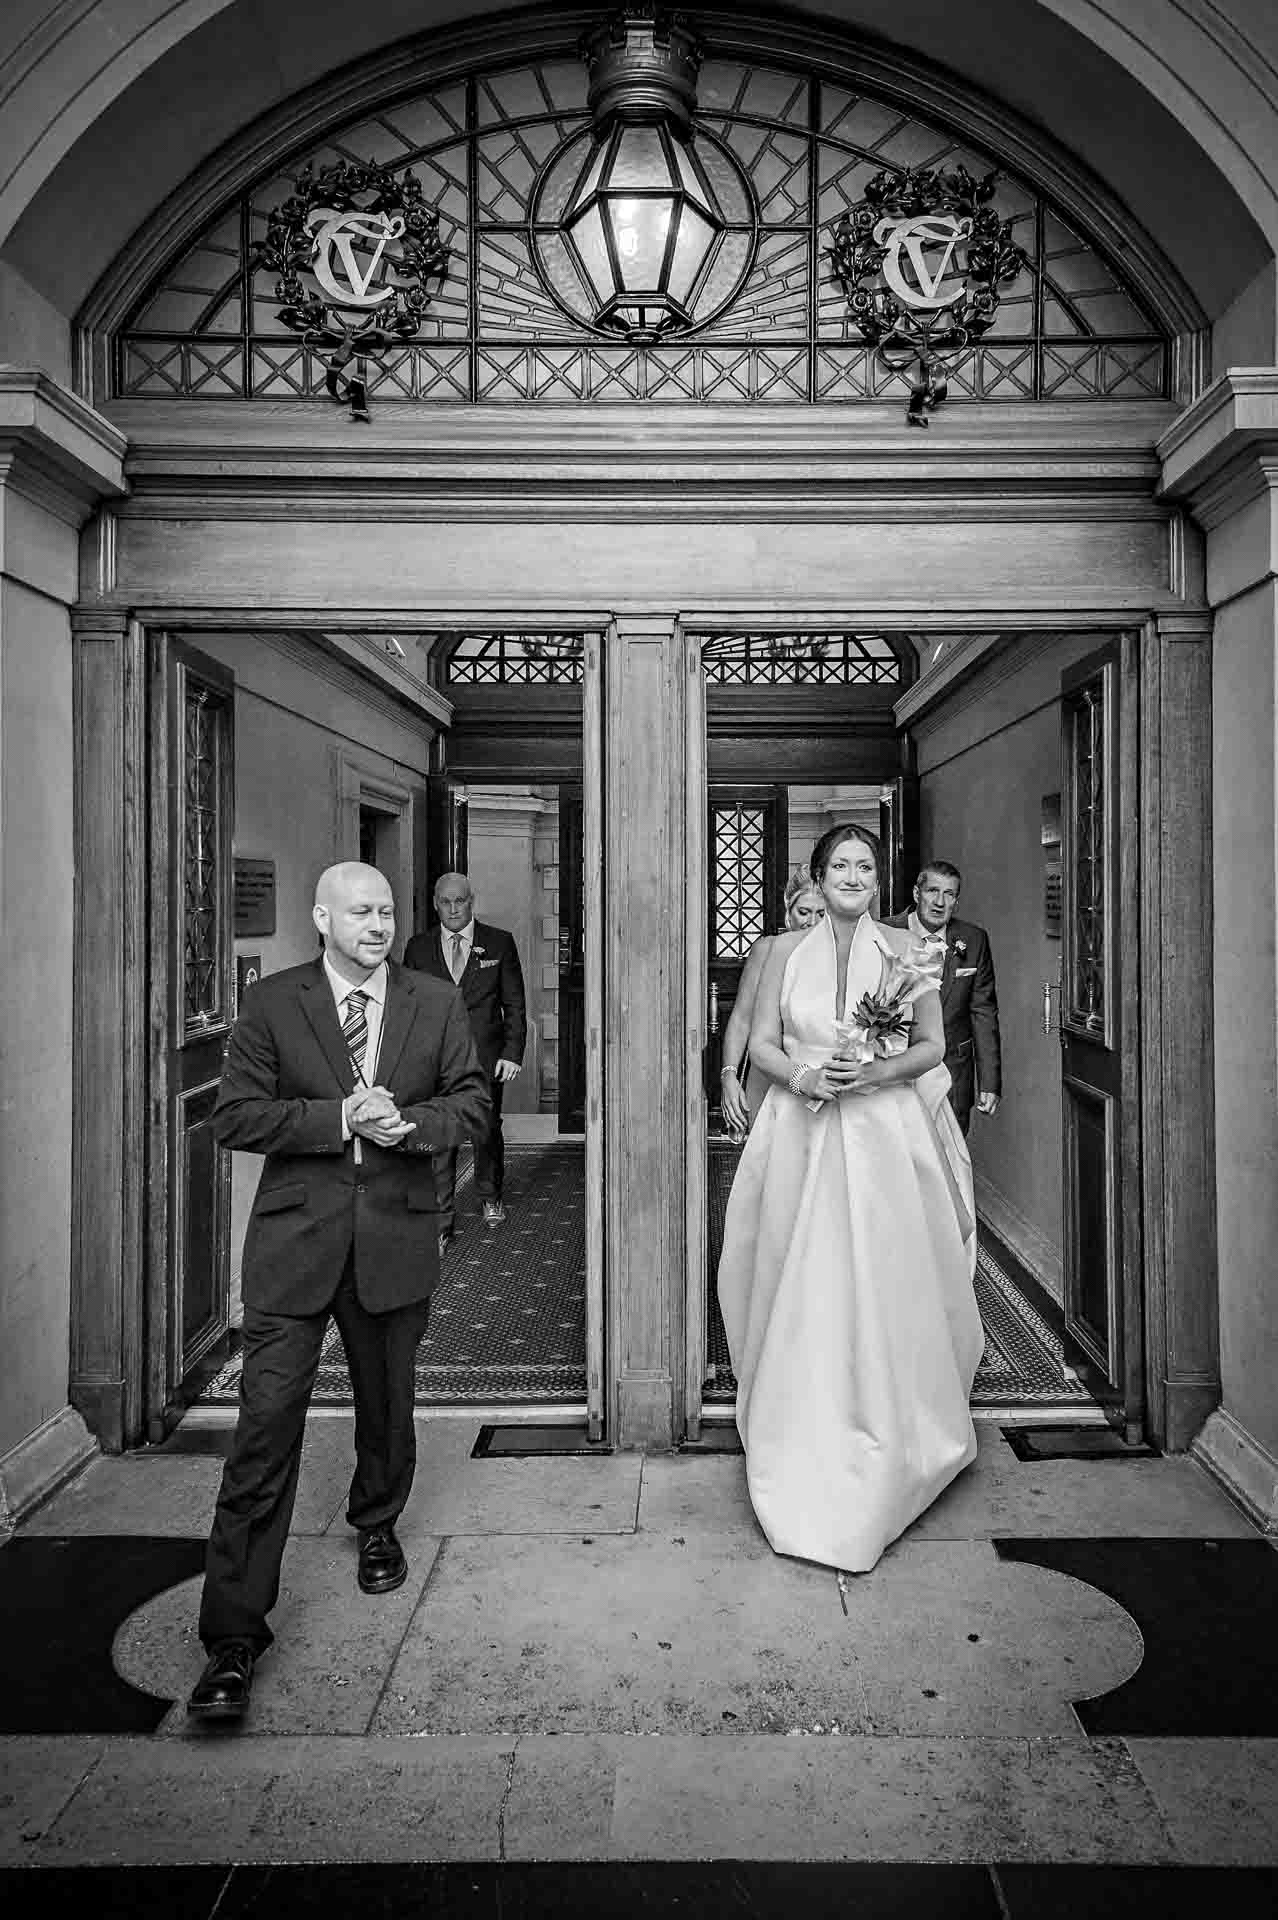 Entrance Doorway in Cardiff City Hall - Bride Entering